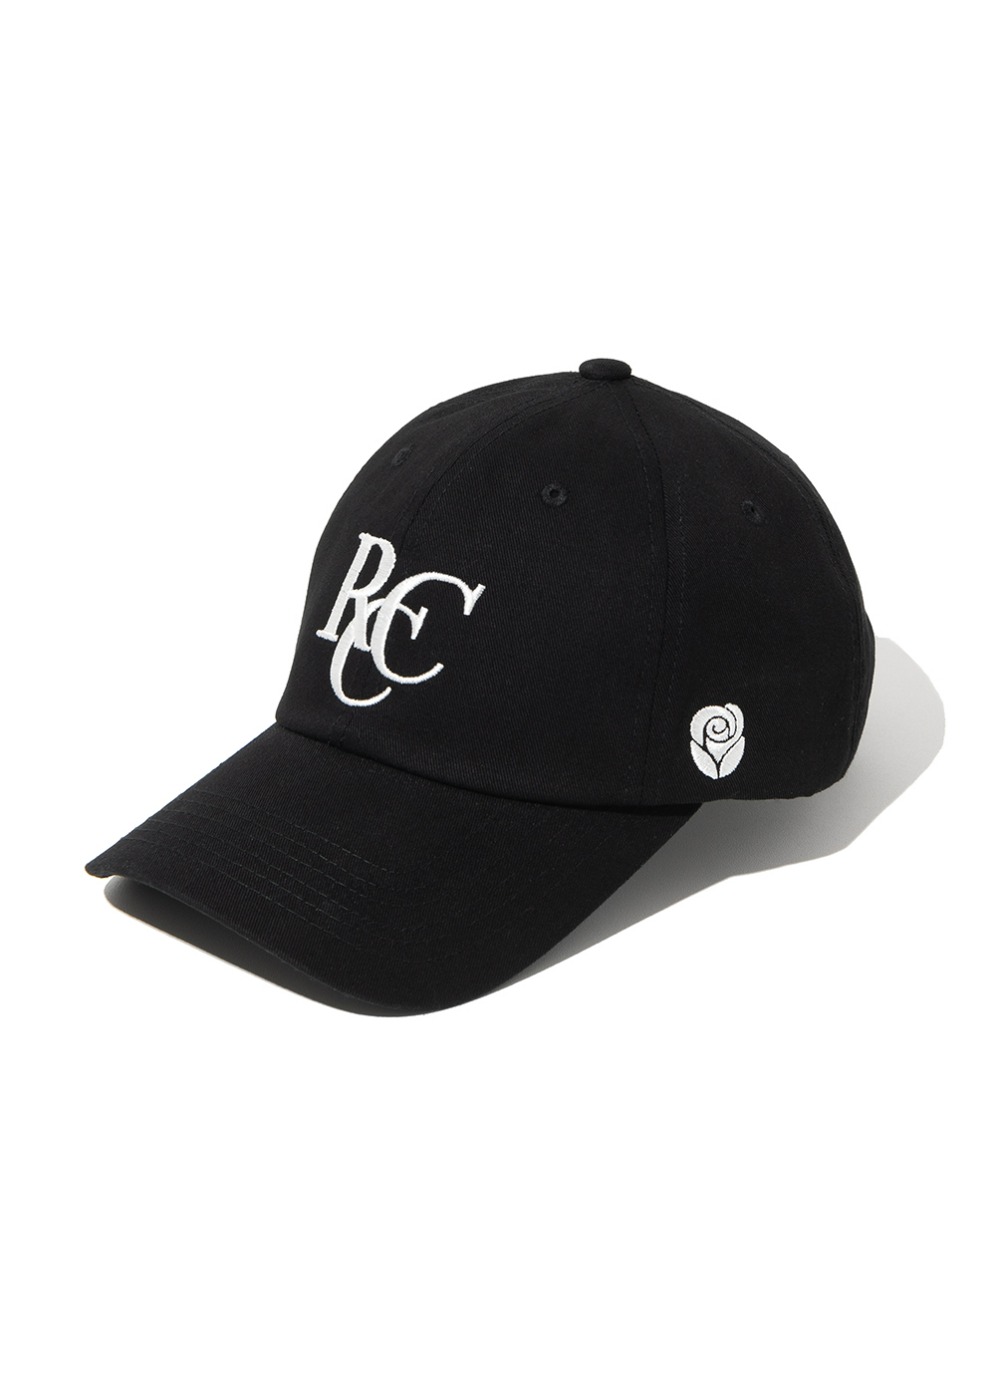 RCC Logo ball cap [BLACK]RCC Logo ball cap [BLACK]자체브랜드